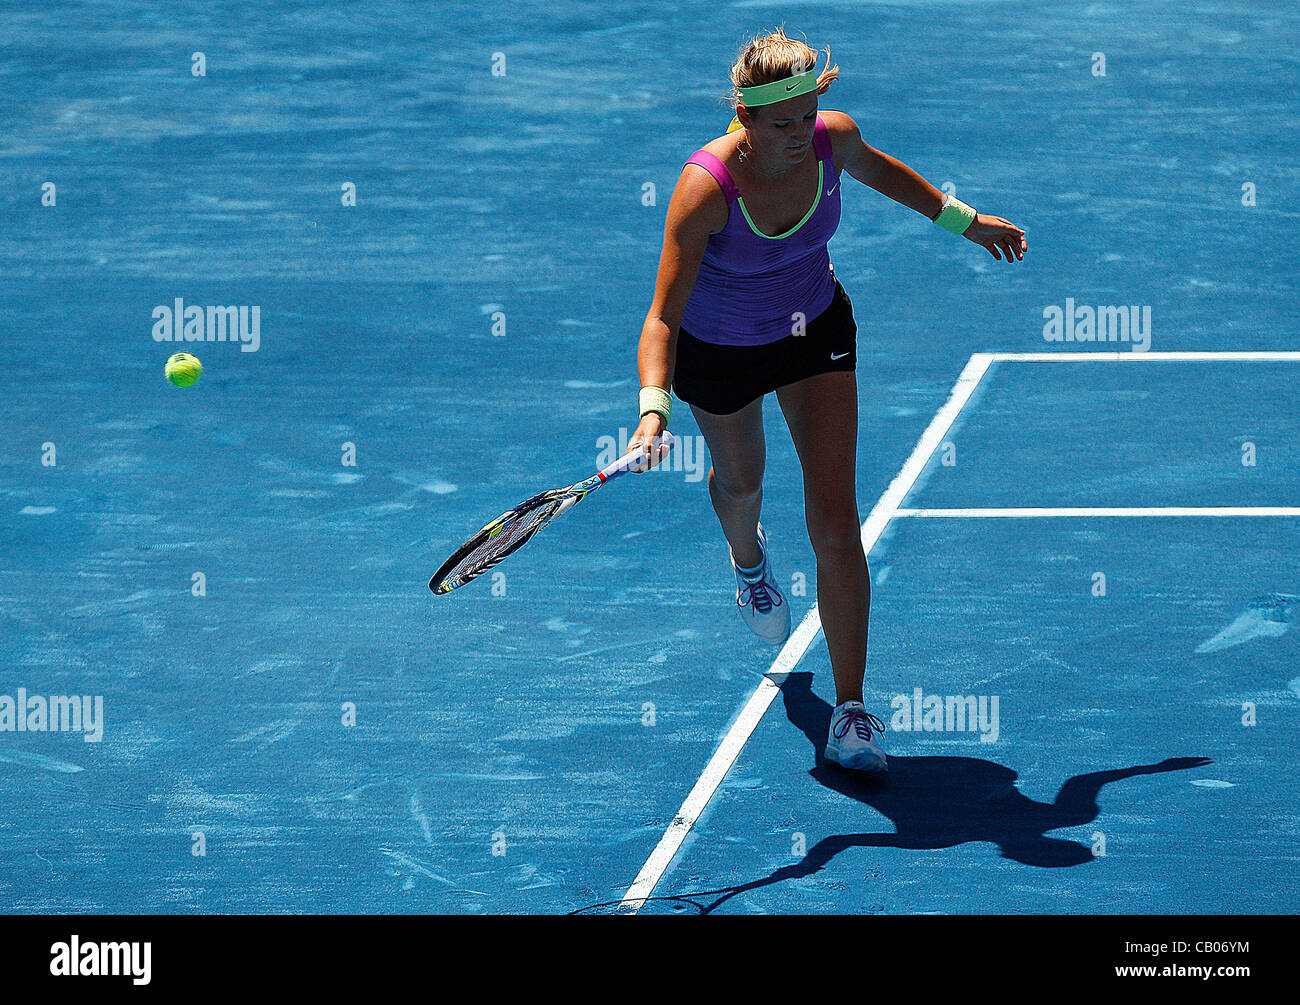 Den 13.05.2012 Madrid, Spanien. Victoria Azarenka in Aktion gegen Serena Williams während abschließende einzelne WTA, Mutua Madrid Open Tennisturnier. Stockfoto